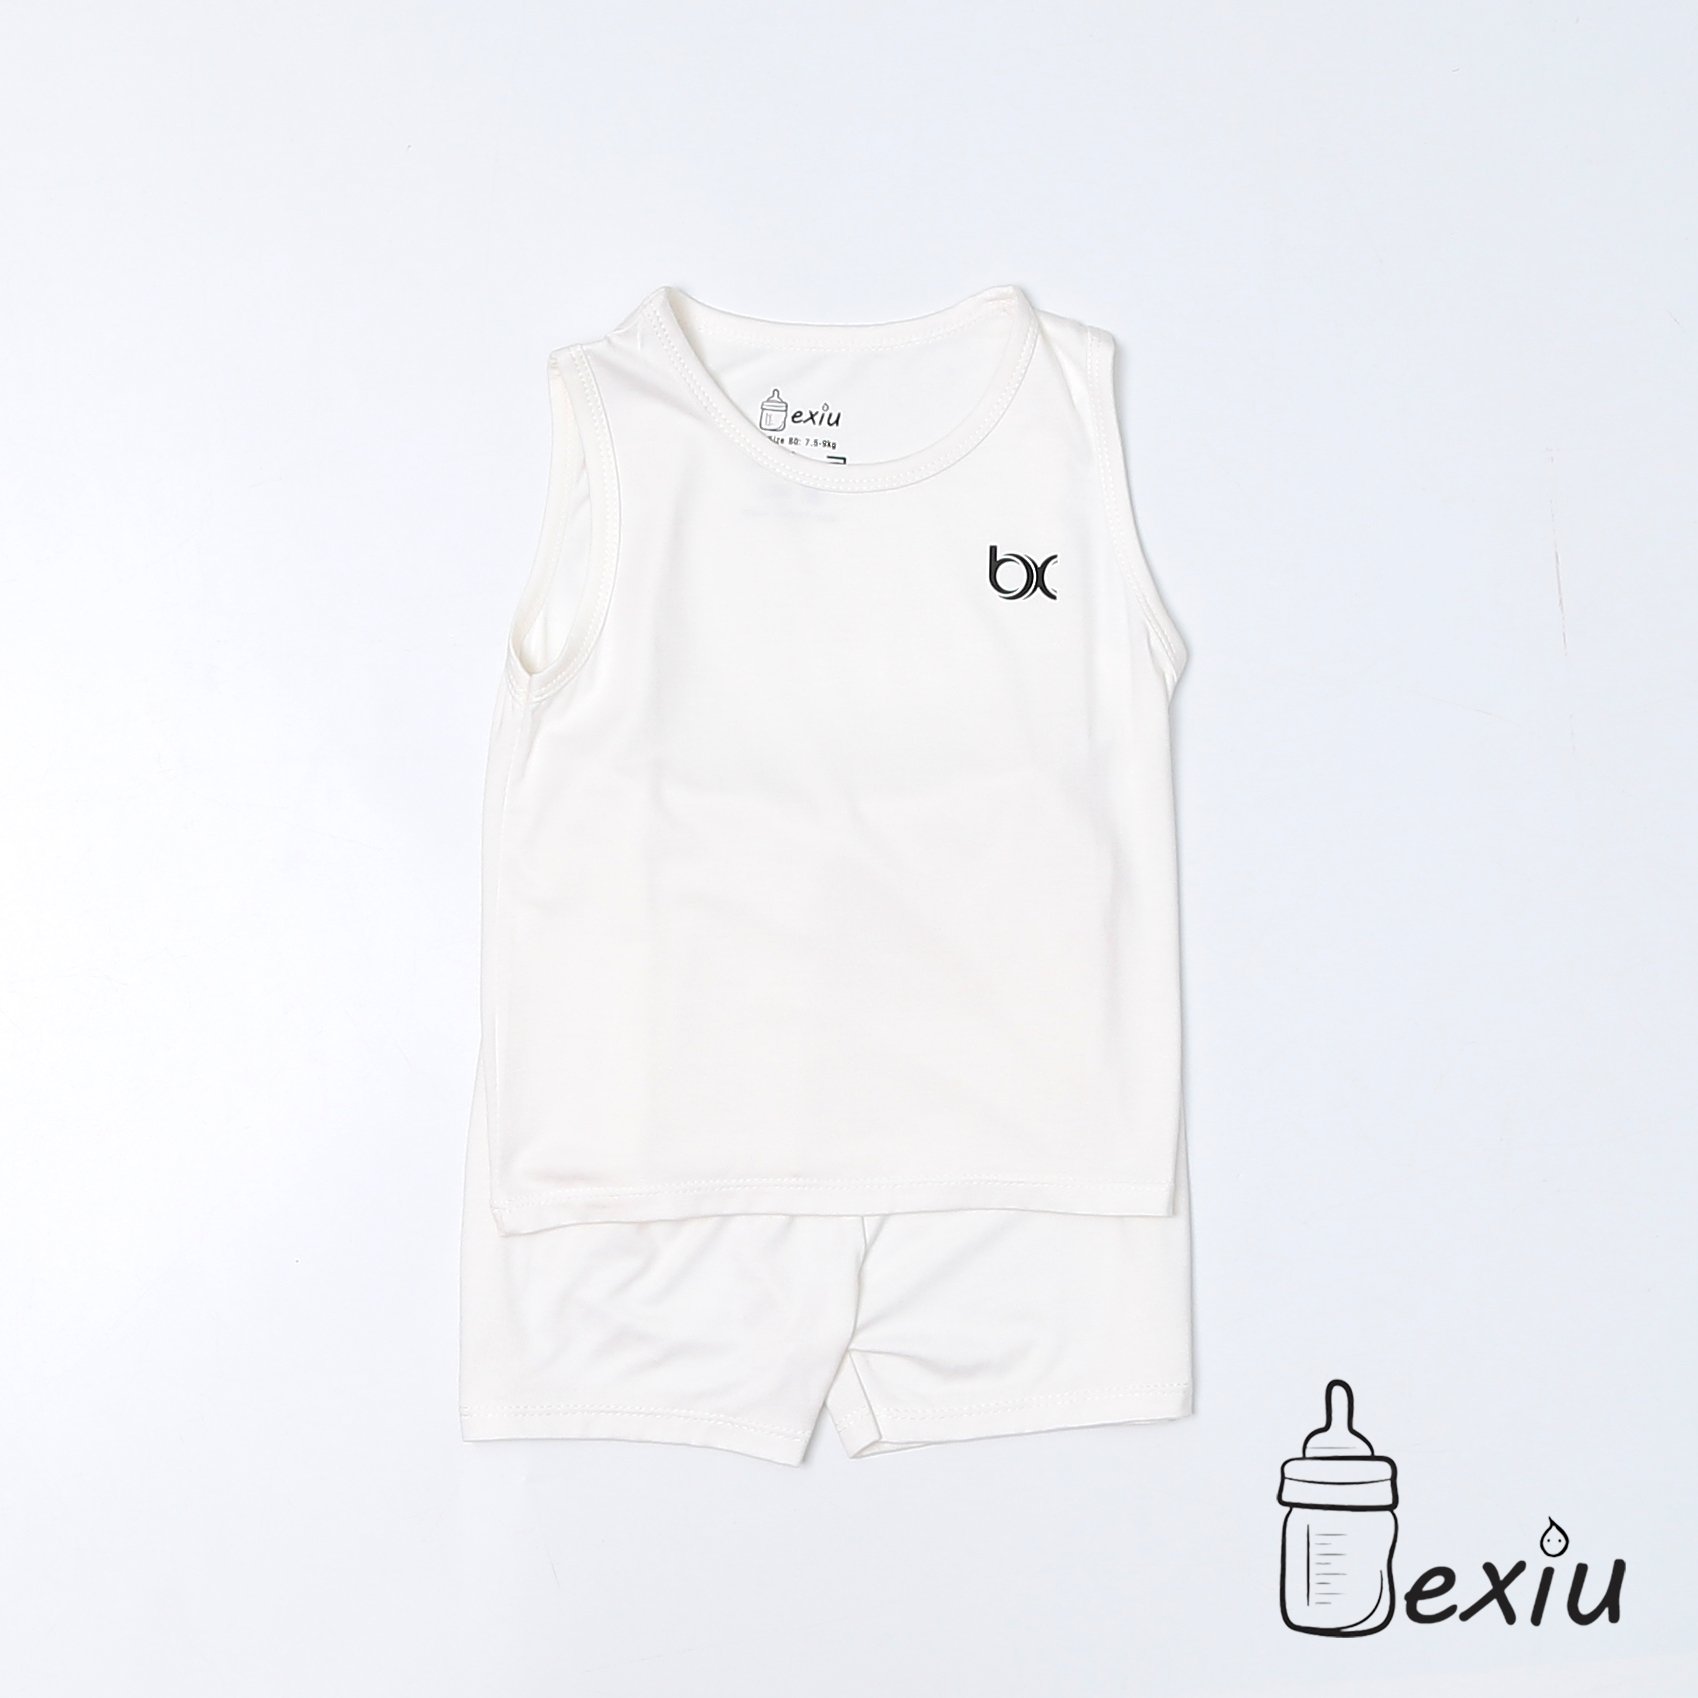 Hcmbộ ba lỗ màu bexiu bx - quần áo trẻ sơ sinh vải cotton lạnh mát mềm - ảnh sản phẩm 7